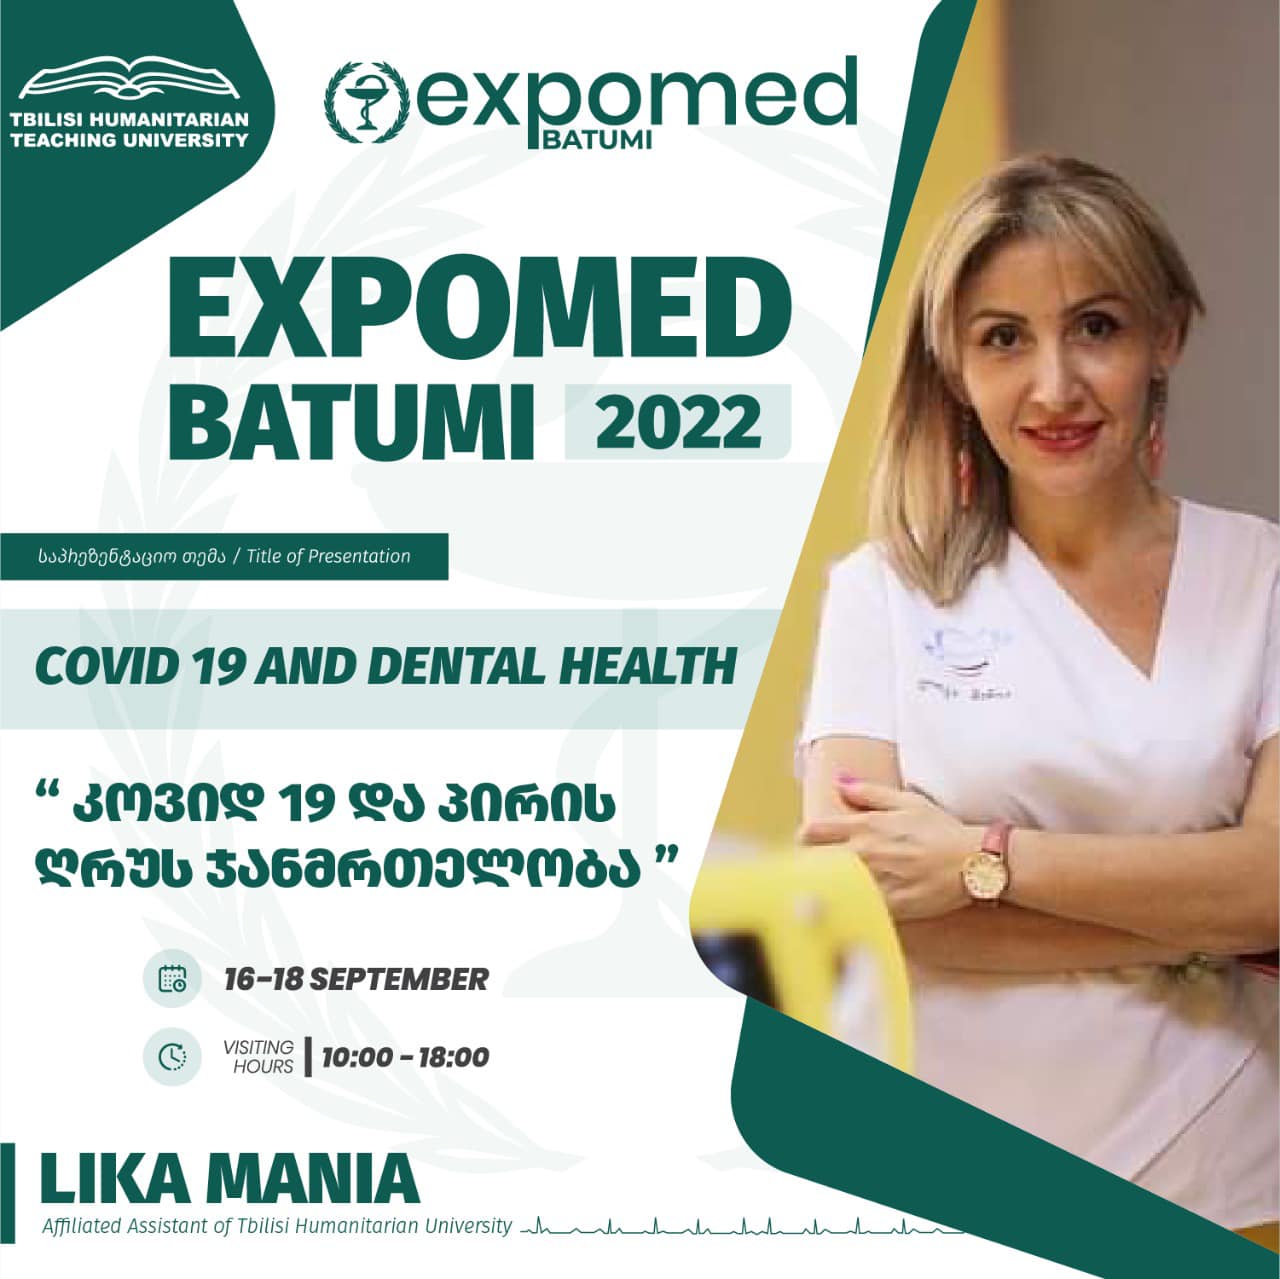 Expo Med Batumi 2022- გამოფენის ფარგლებში მონაწილე კომპანია “თბილისის ჰუმანიტარული სასწავლო უნივერსიტეტი ” ჩაატარებს